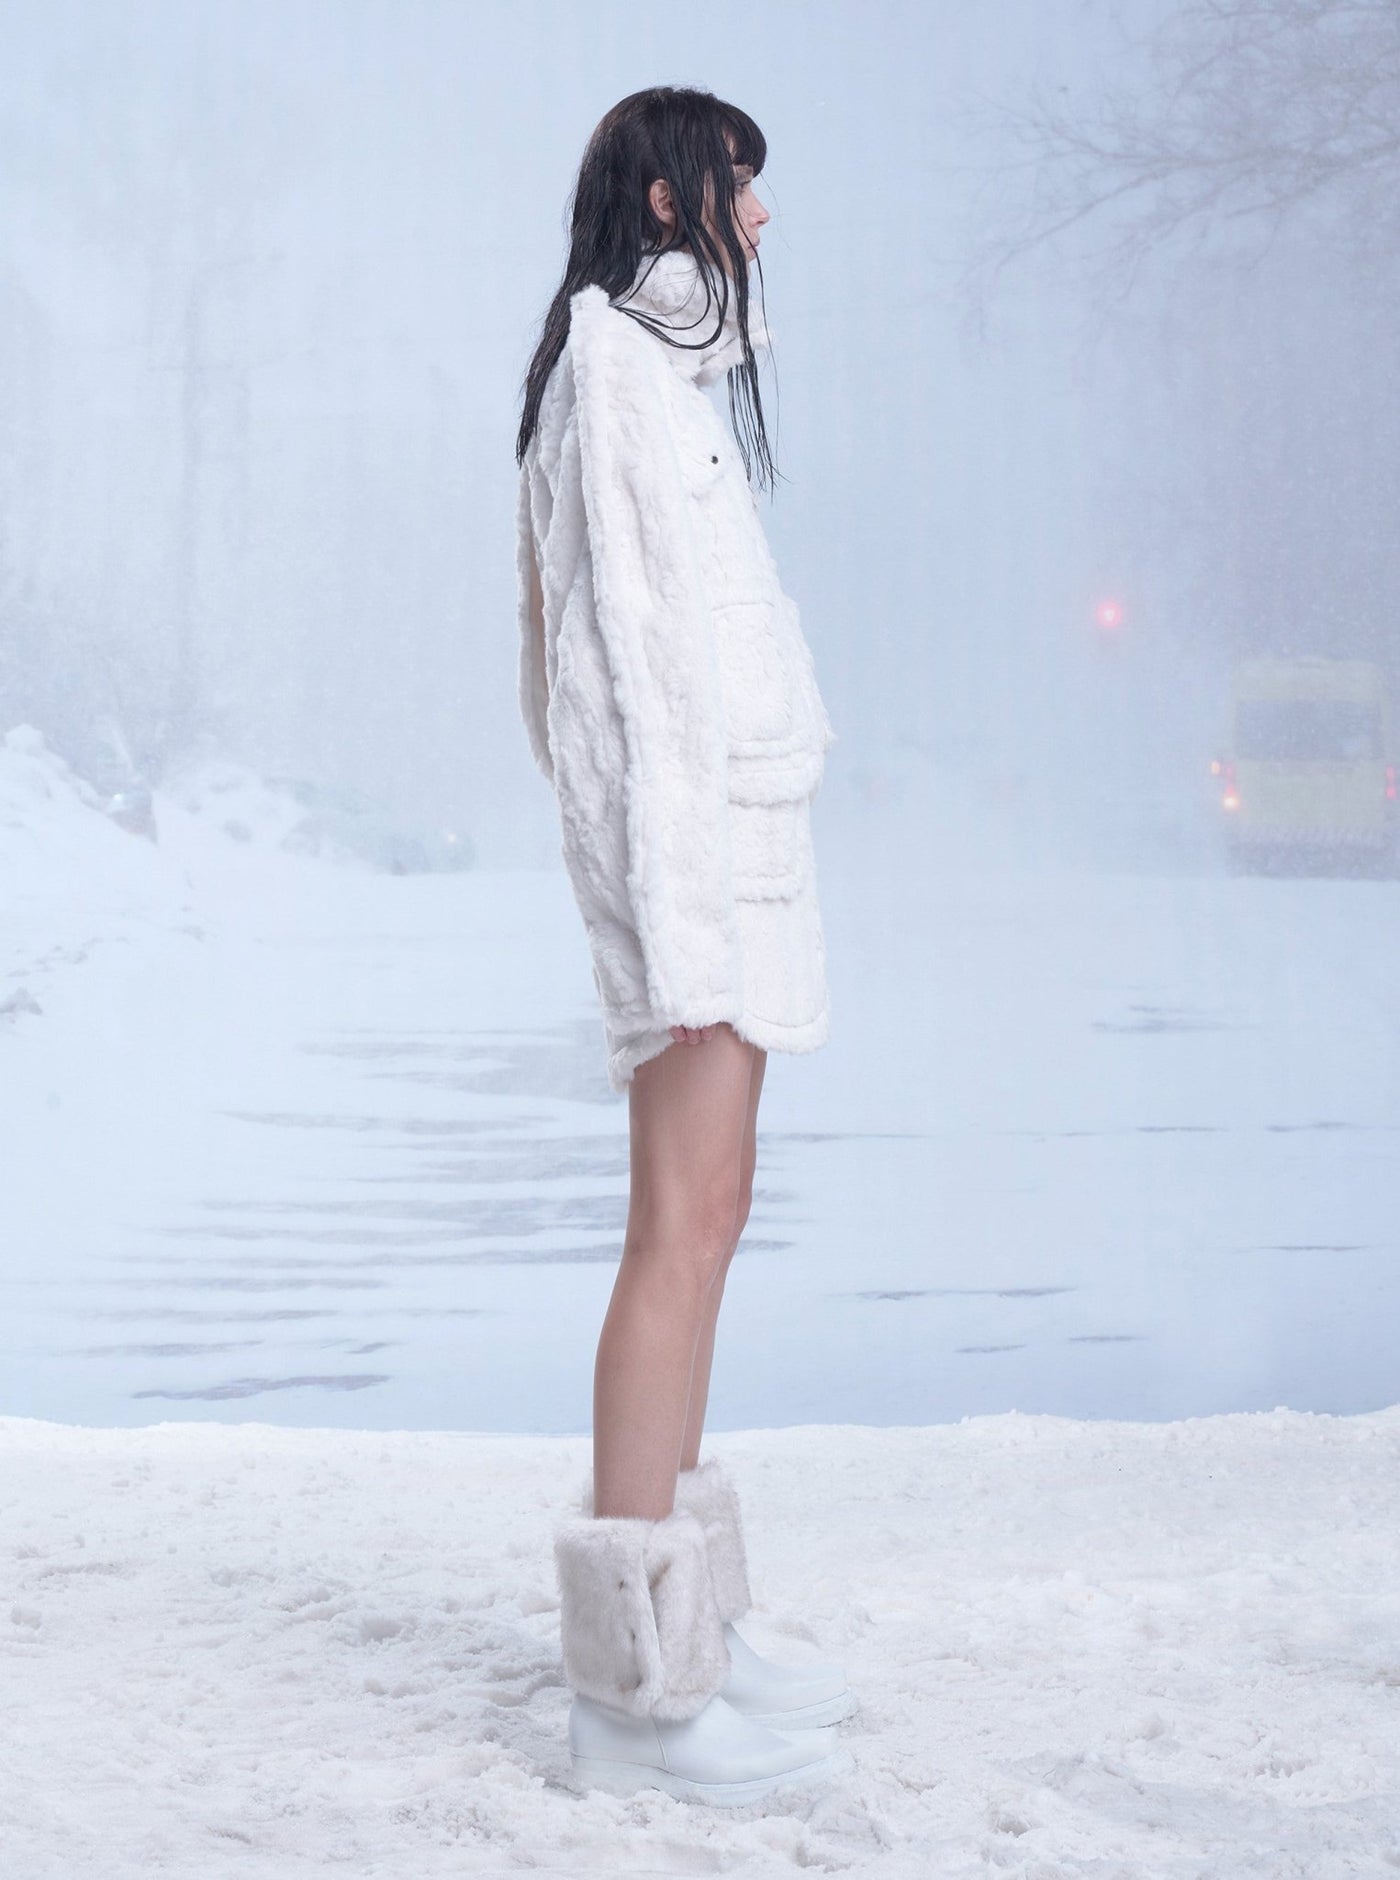 White Fluffy Fur Jacket/Skirt ANS0021